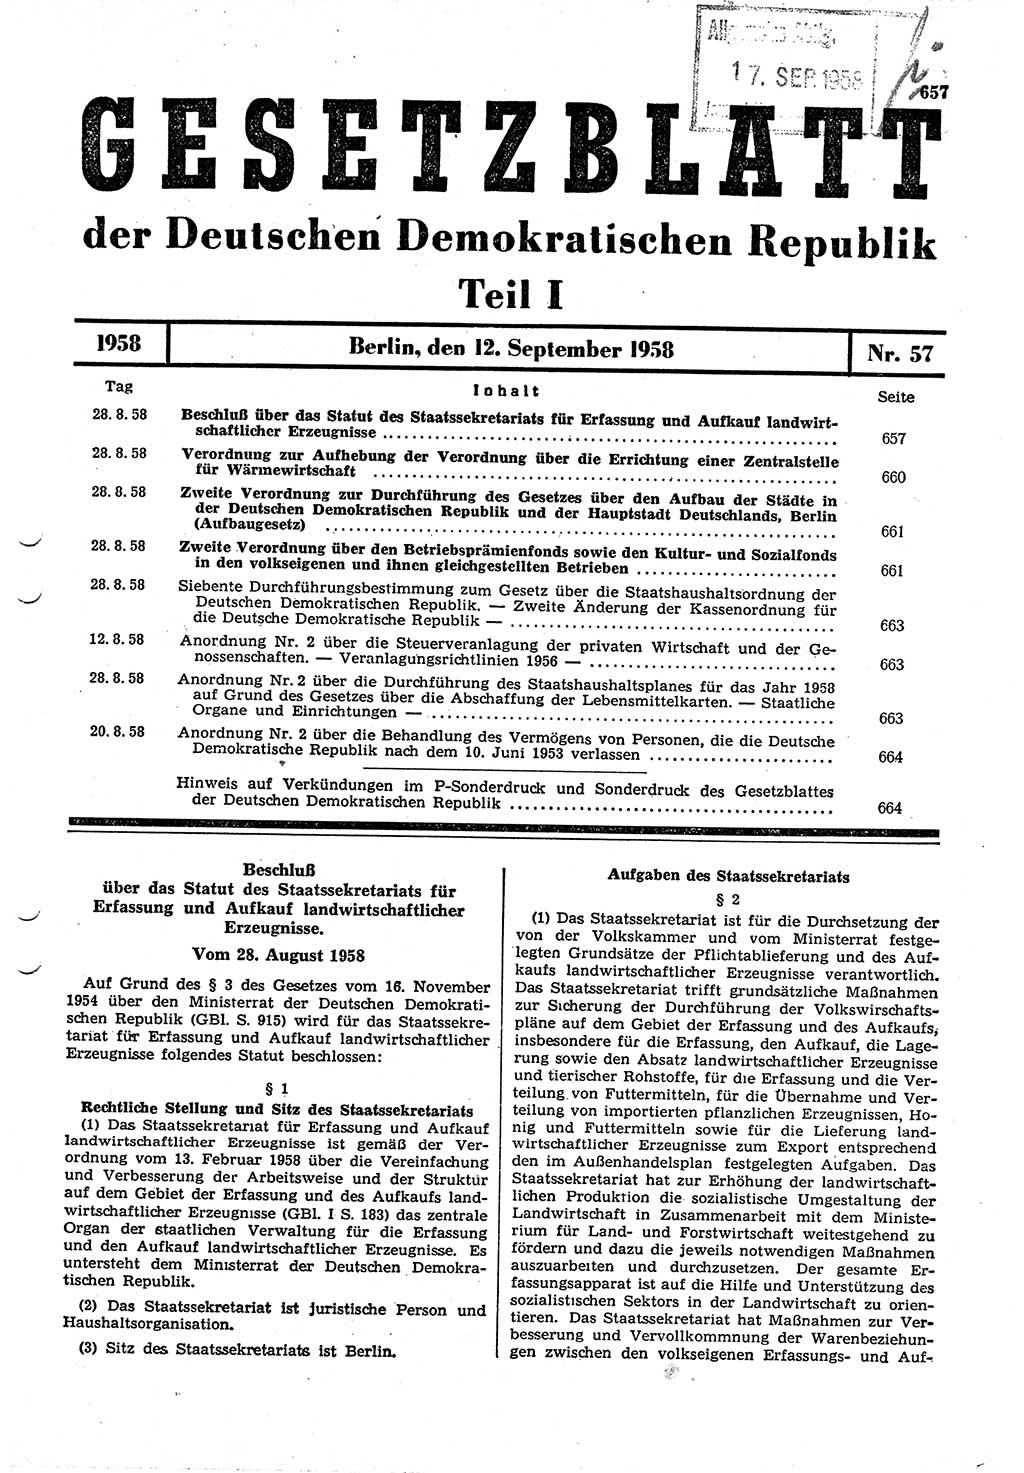 Gesetzblatt (GBl.) der Deutschen Demokratischen Republik (DDR) Teil Ⅰ 1958, Seite 657 (GBl. DDR Ⅰ 1958, S. 657)